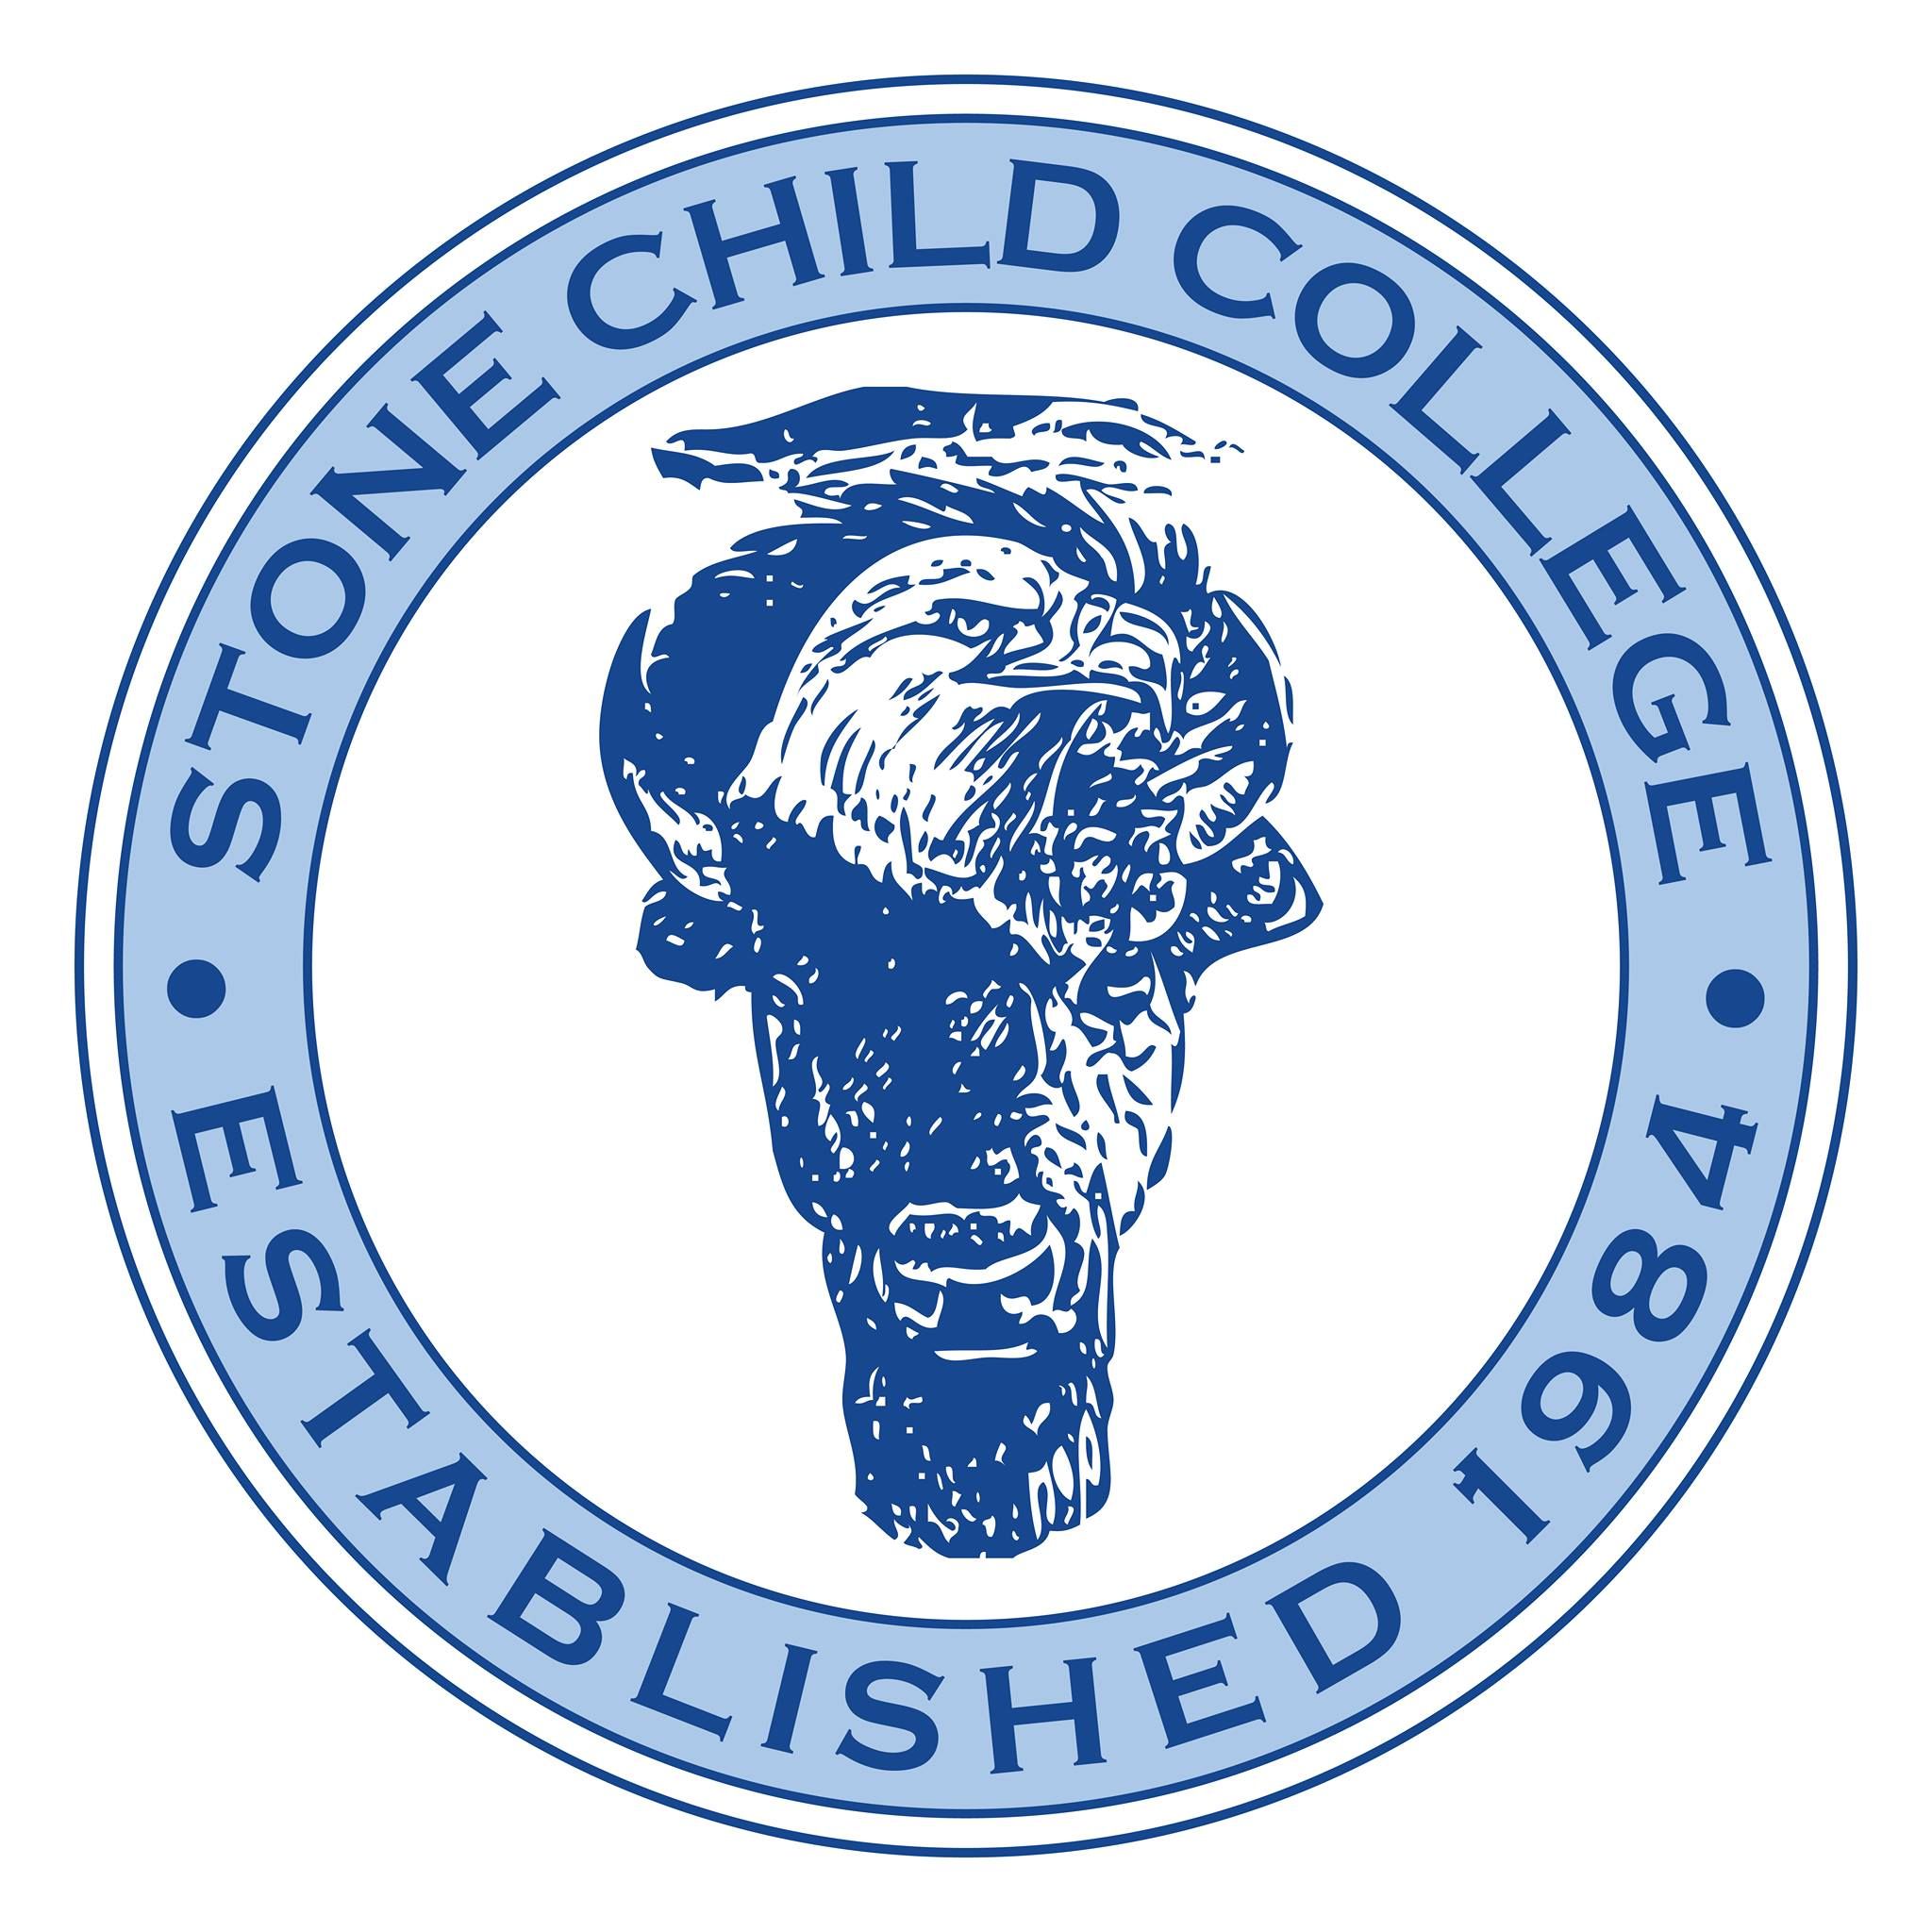 School logo for Stone Child College in Box Elder MO